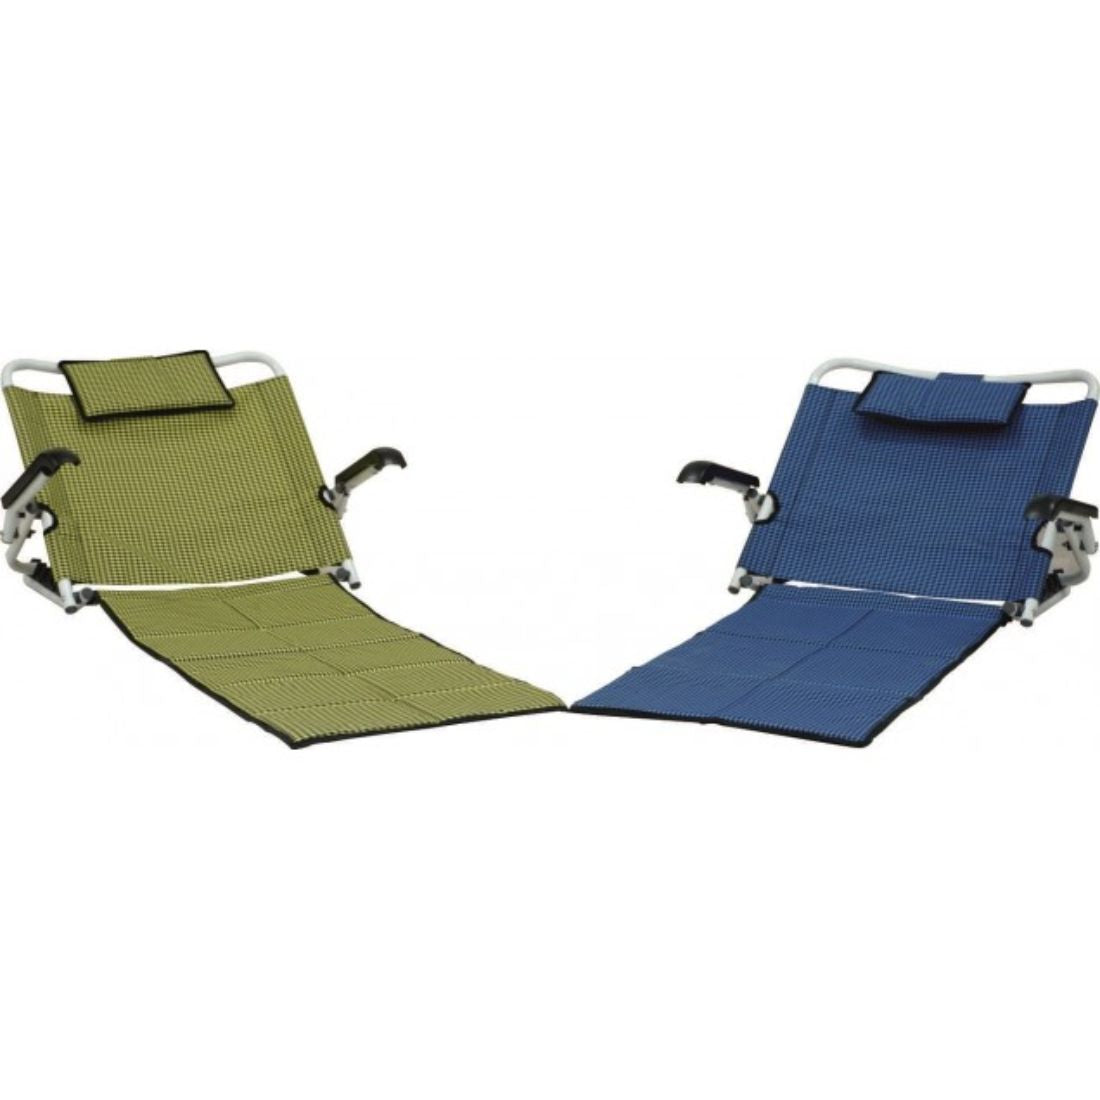 Backrest for Bed with Armrest & Mat - Adjustable Bed Backrest